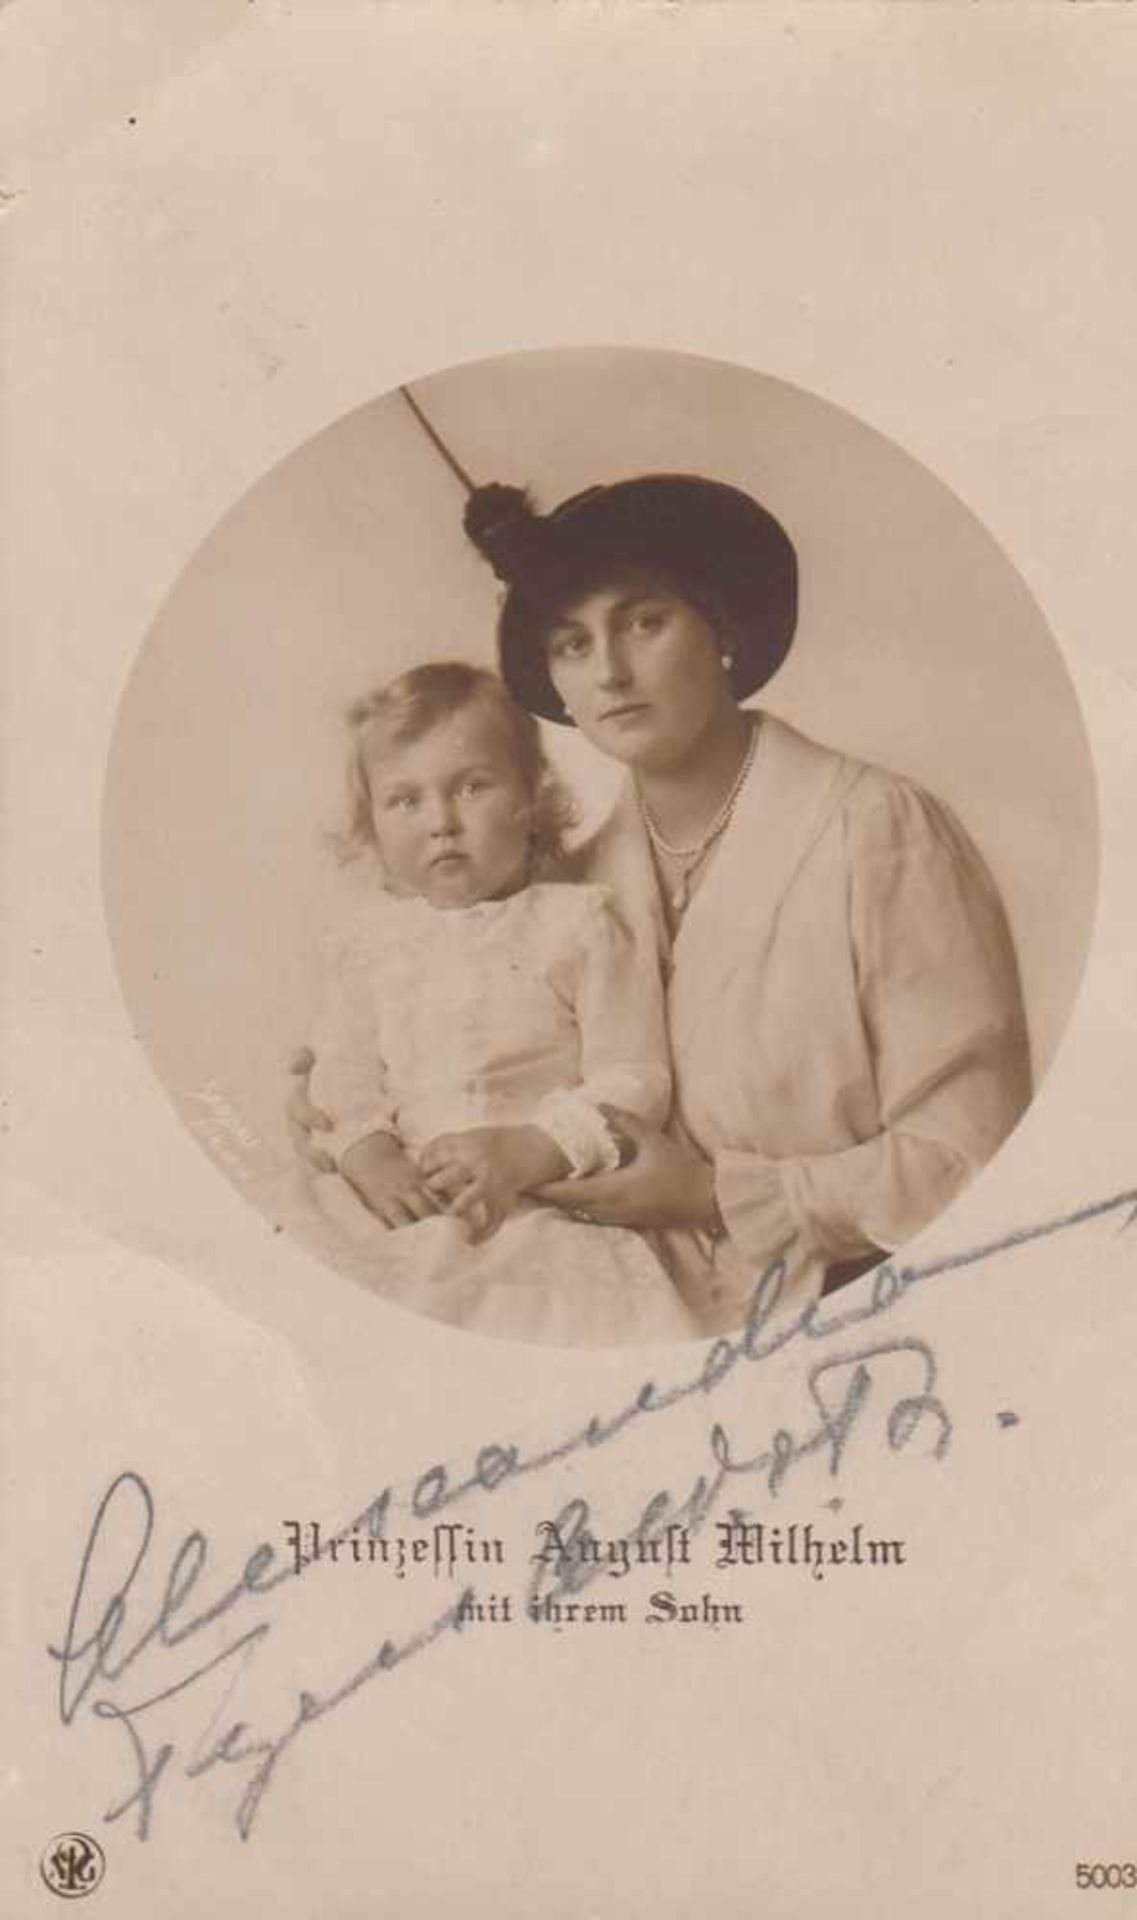 Postkarte mit original Unterschrift Prinzessin Auguste Wilhelm